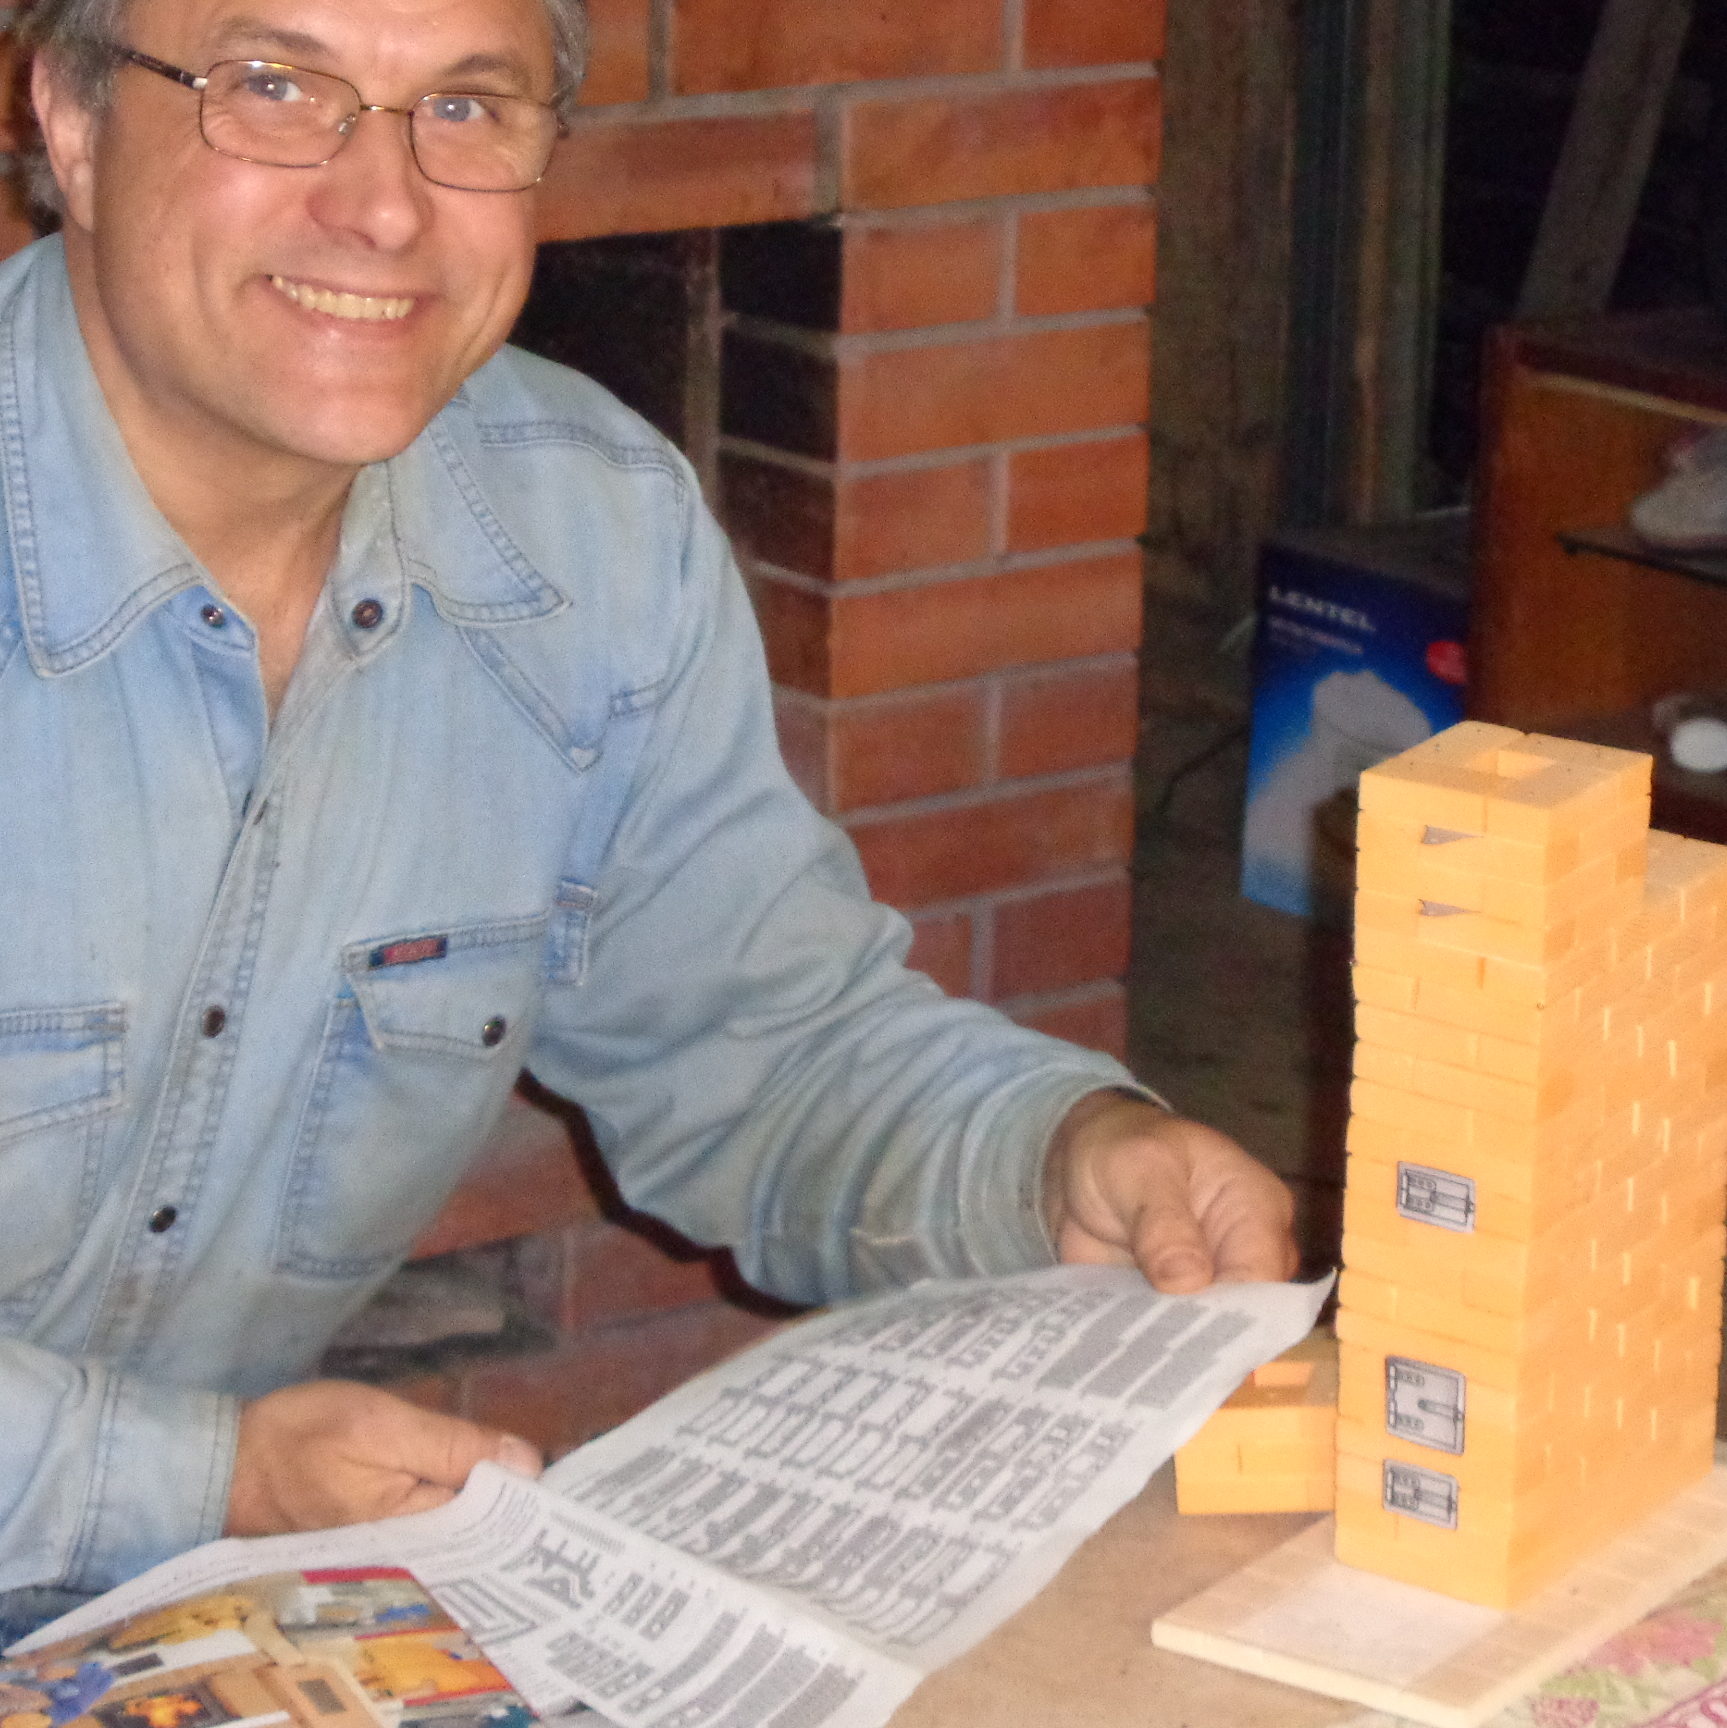 Атамас Валерий — автор идеи обучения печной кладке макетированием печей